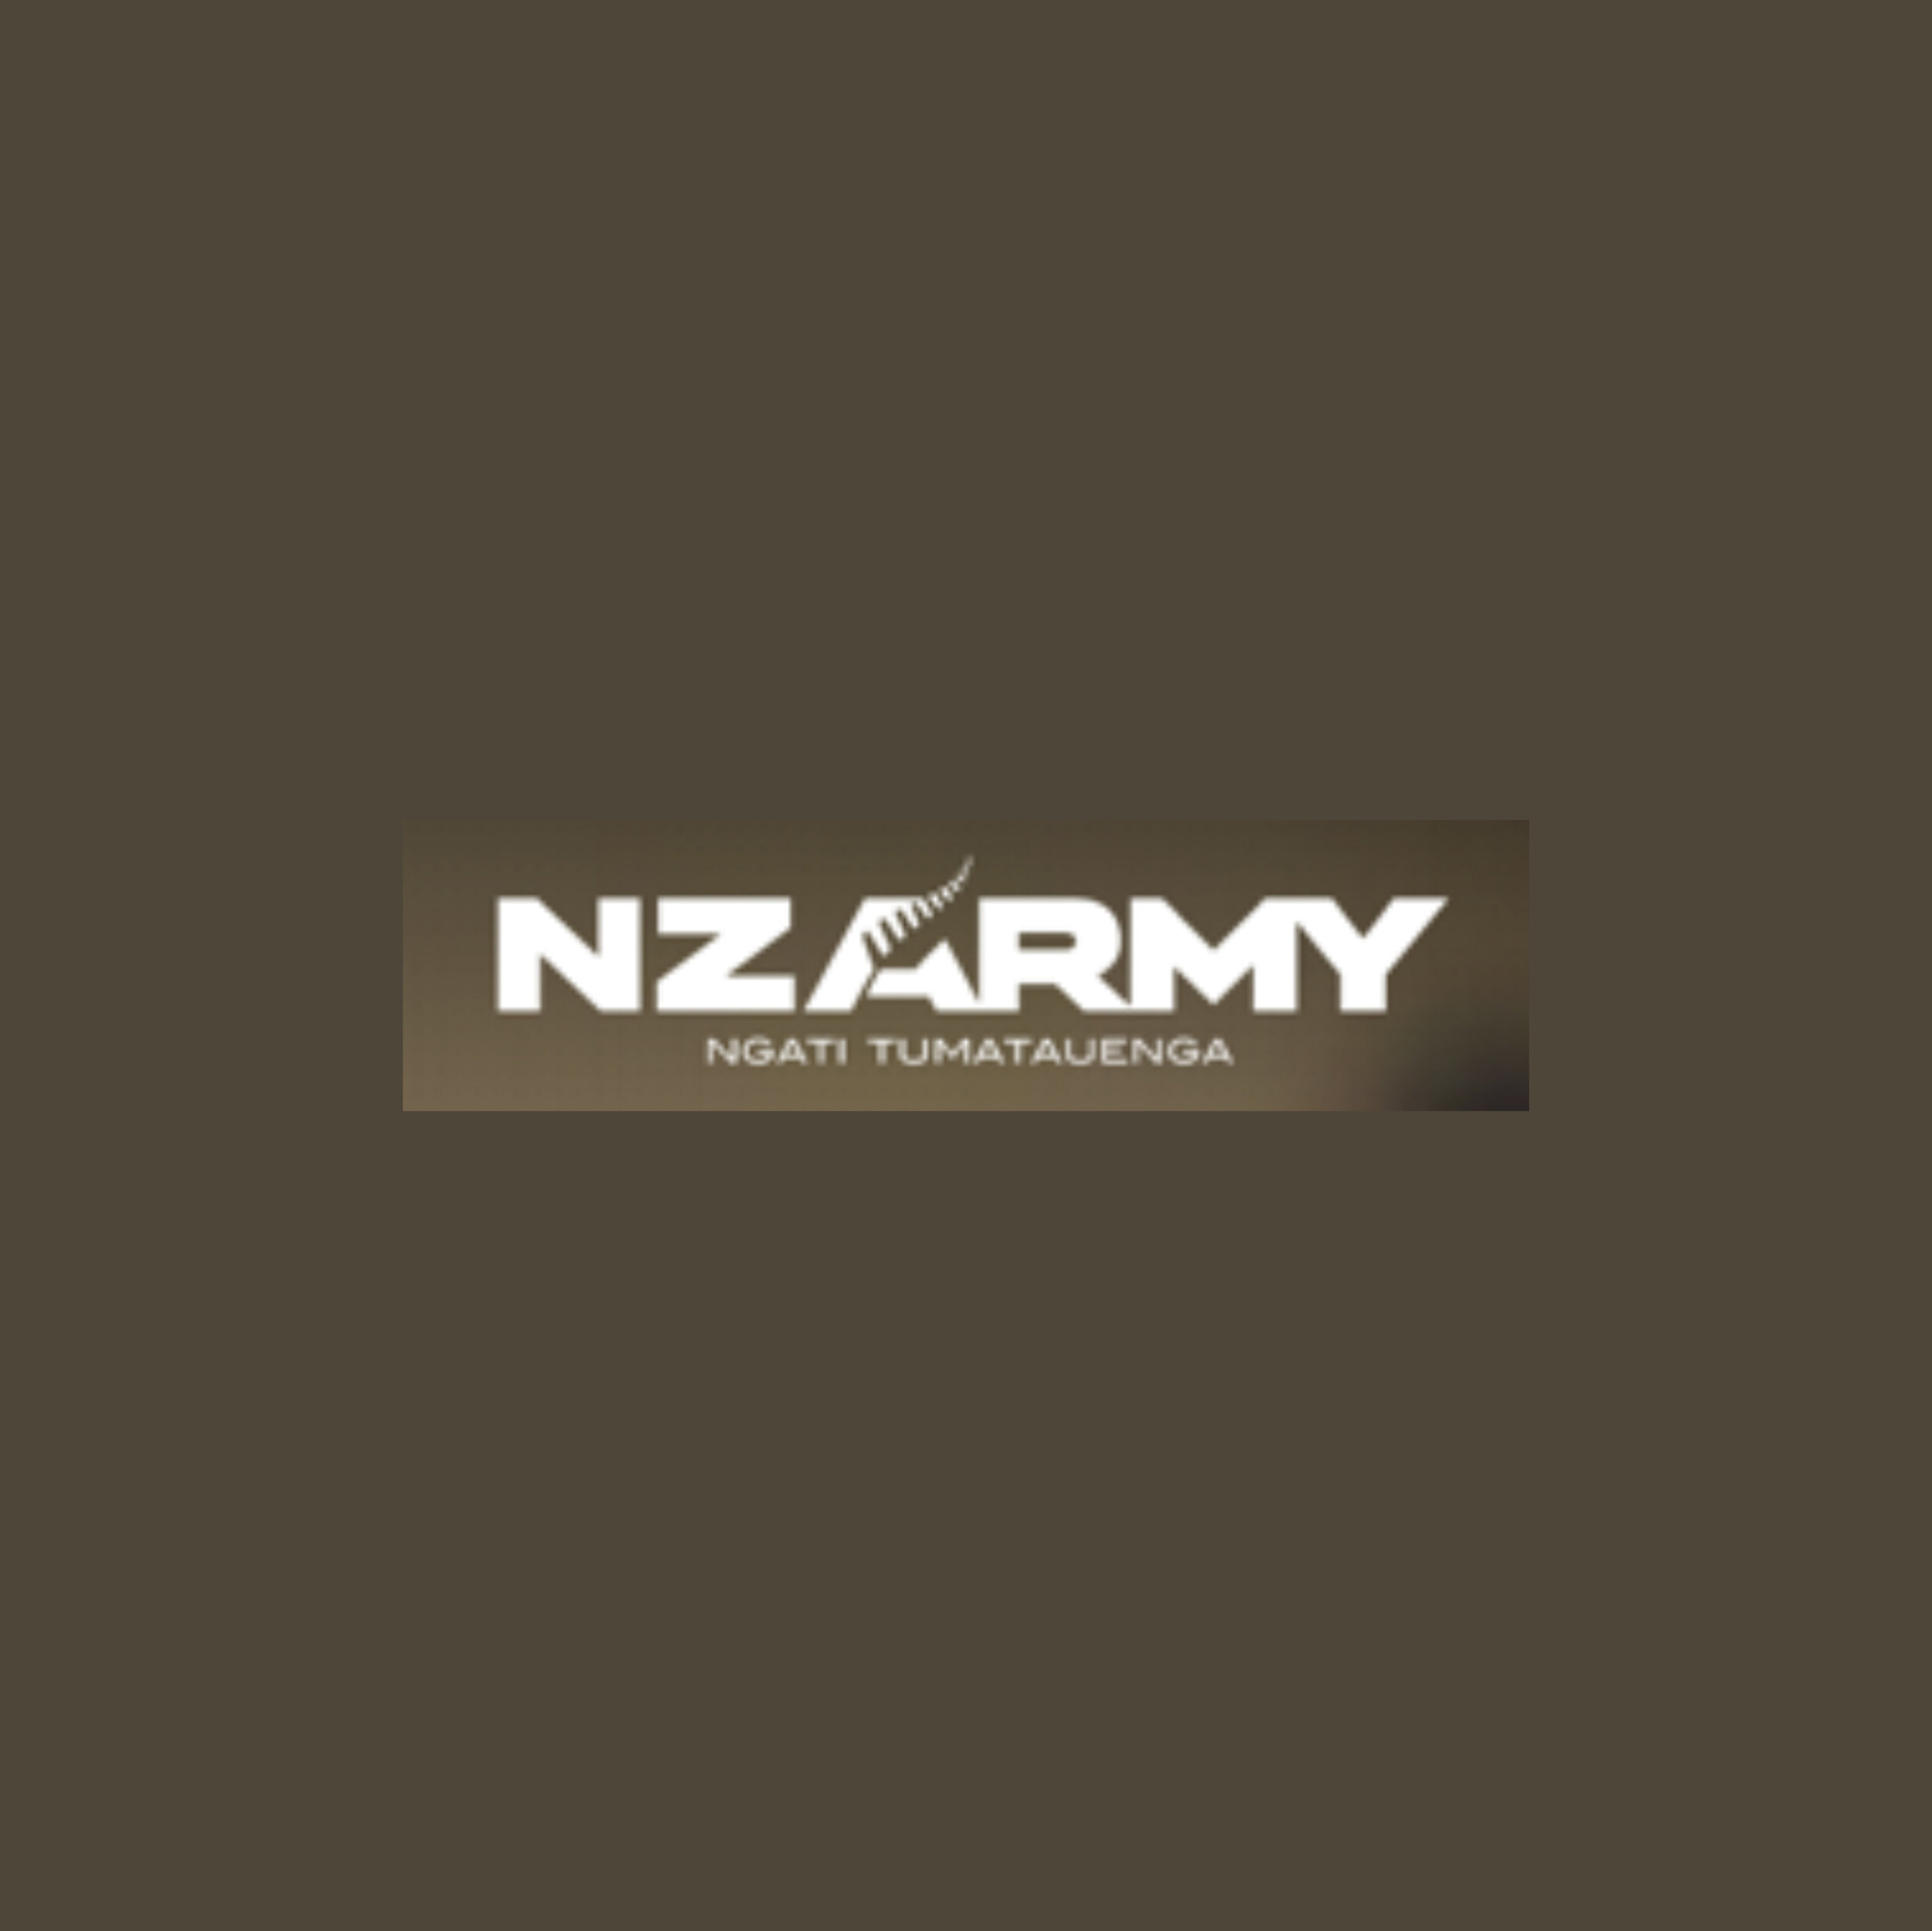 NZ Army